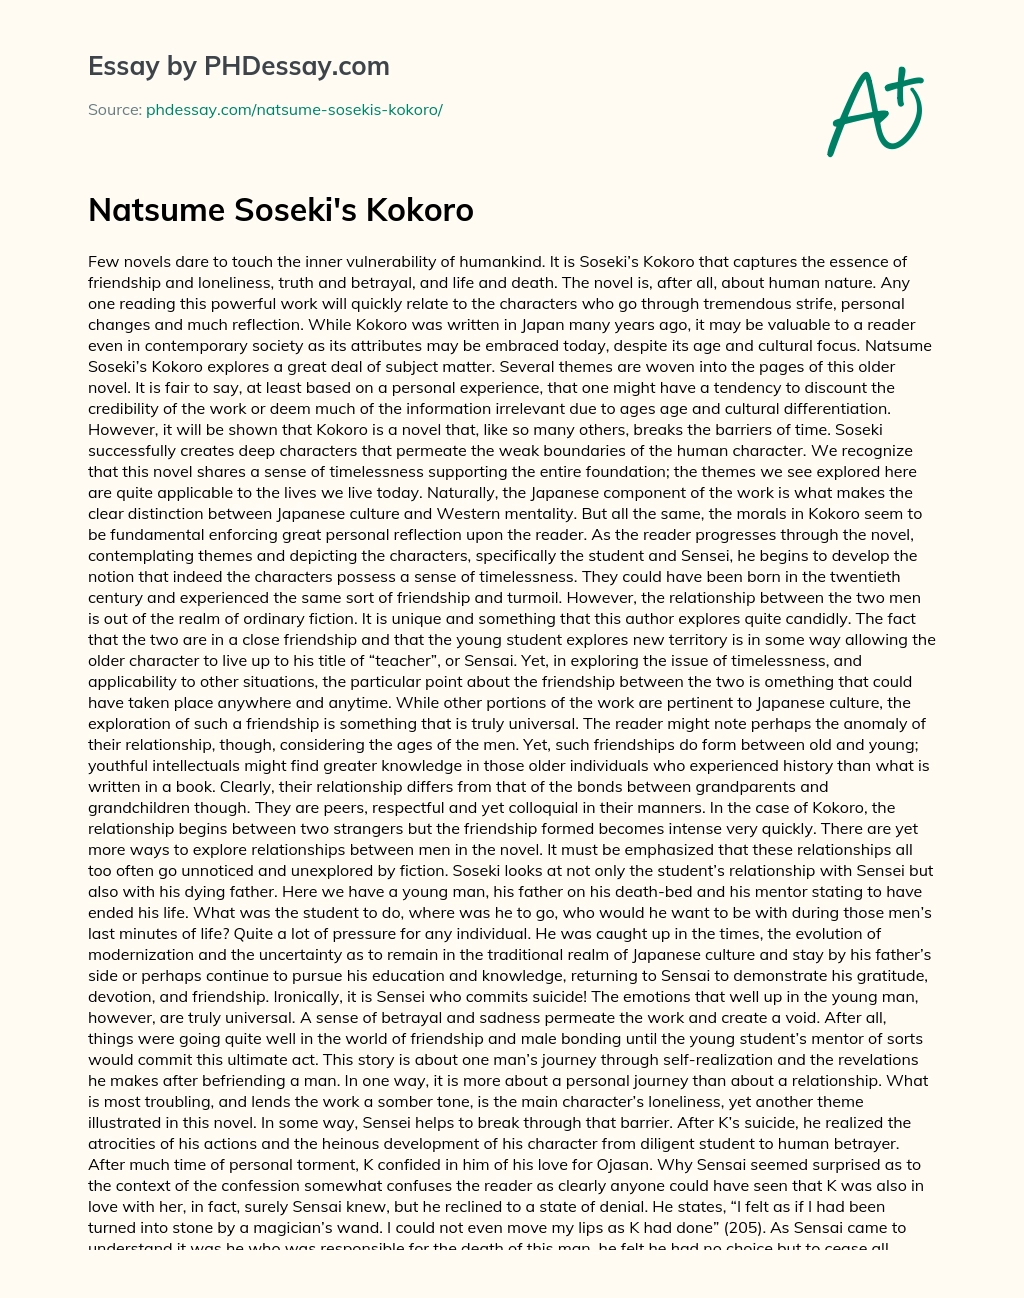 Natsume Soseki’s Kokoro essay